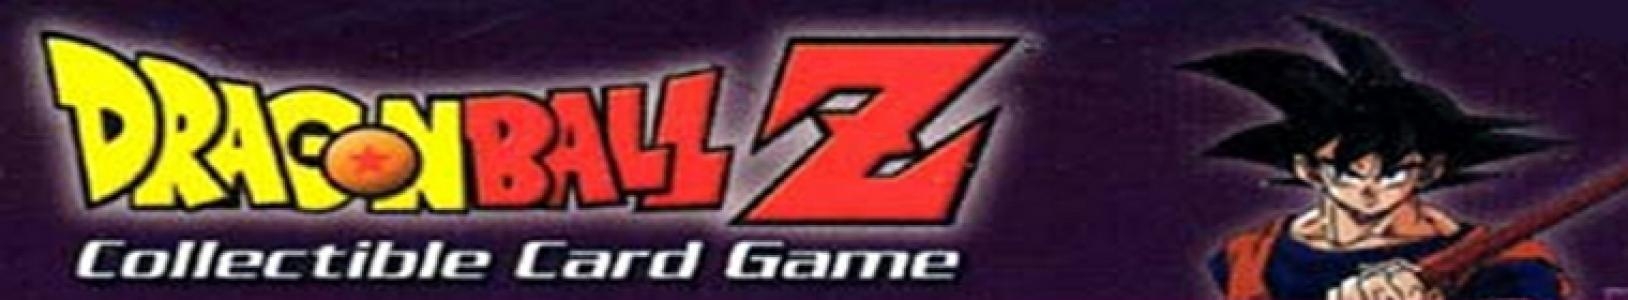 Dragon Ball Z: Collectible Card Game banner